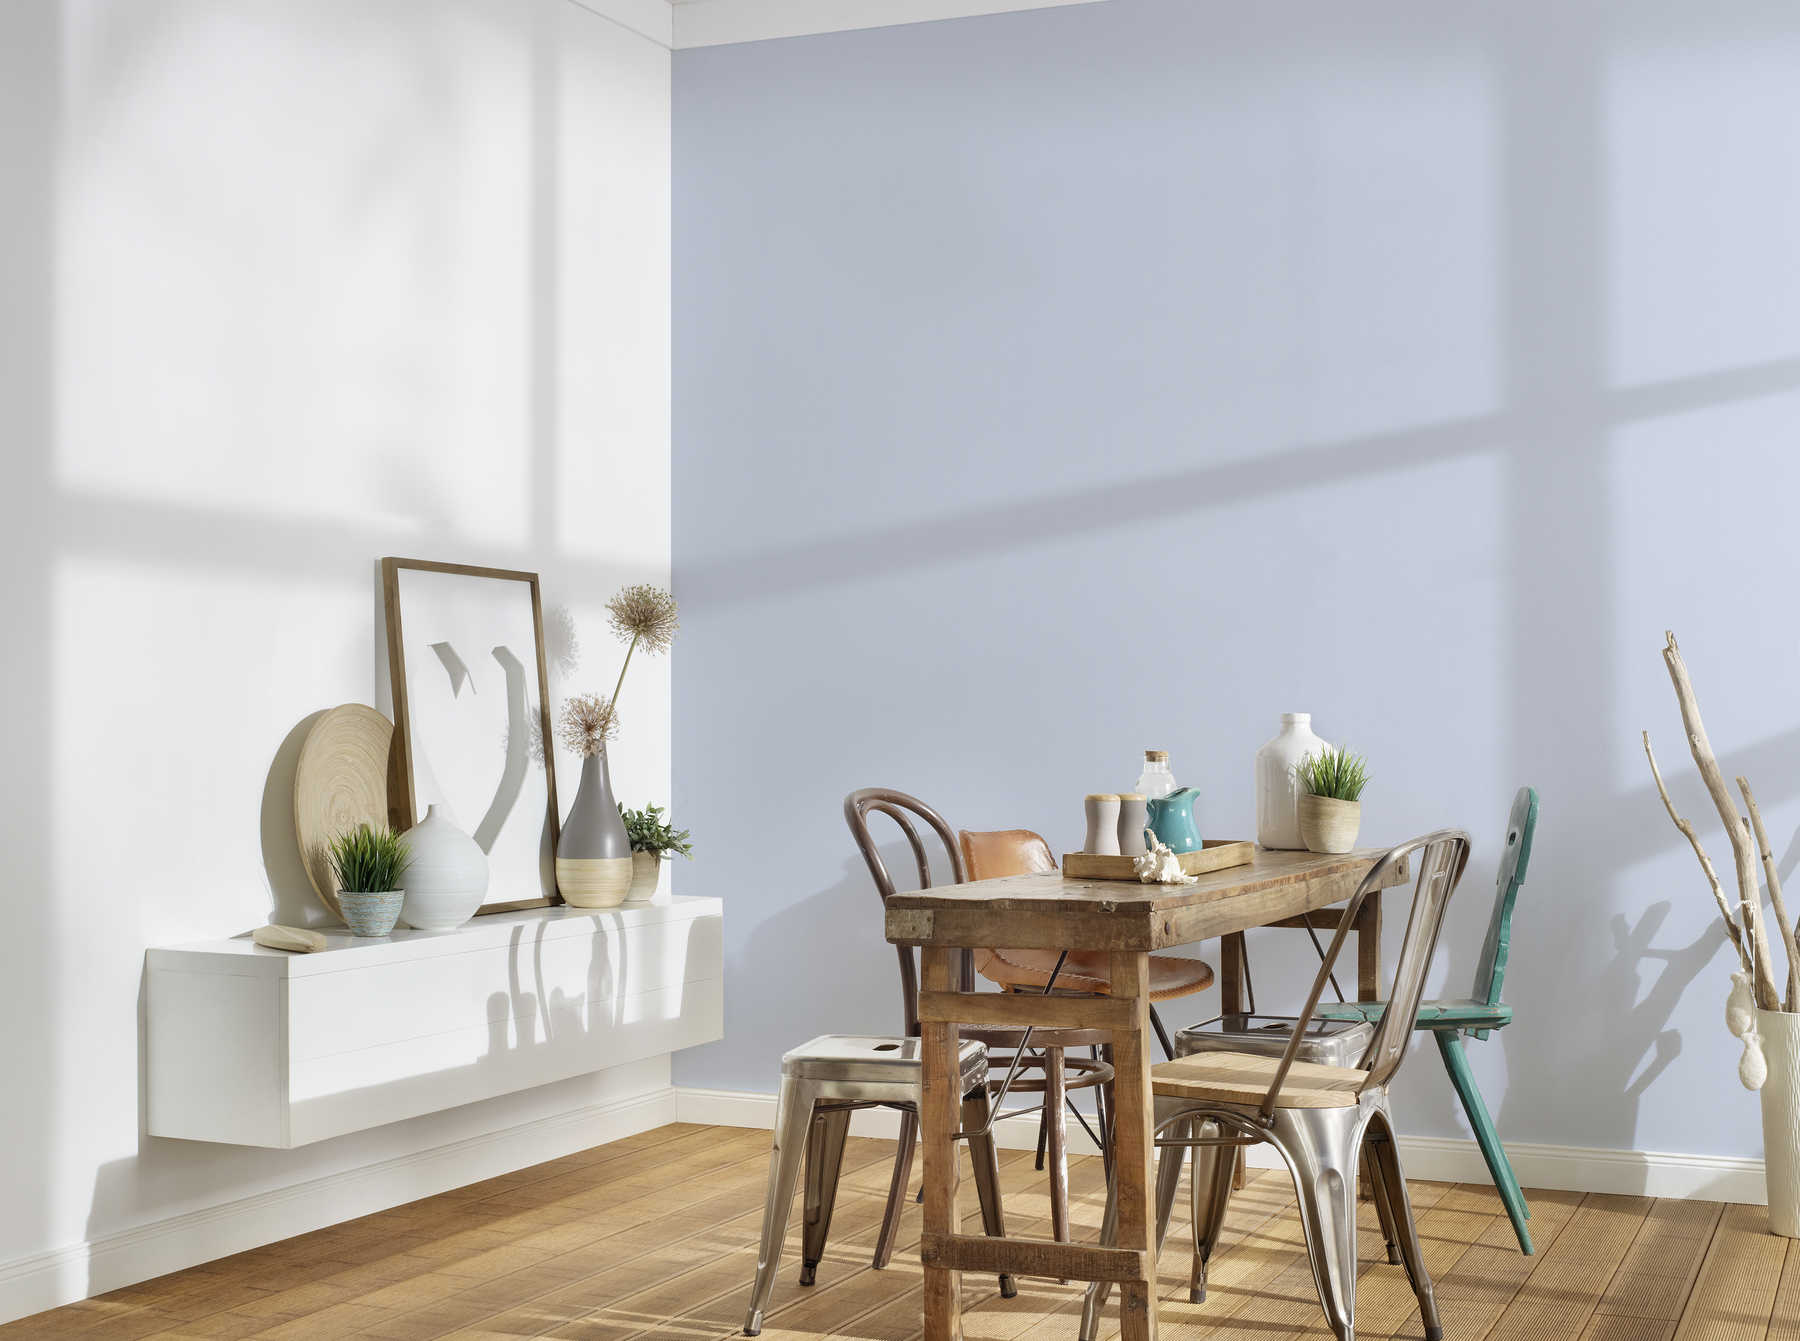             Plain wallpaper in pastel colour with subtle textile texture - blue
        